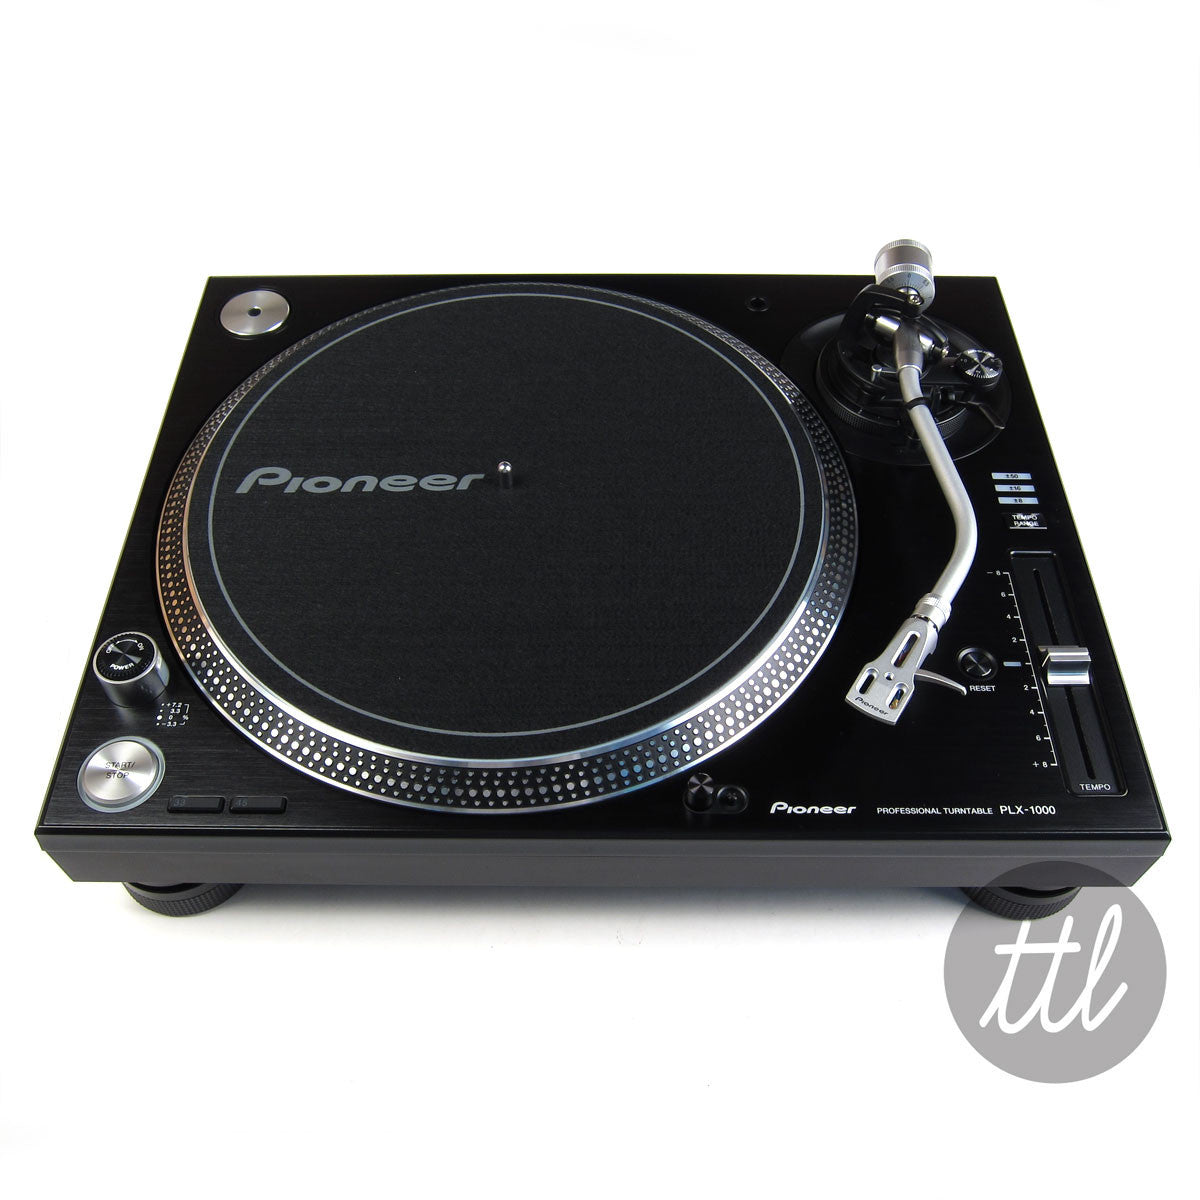 Pioneer DJ: PLX-1000 Professional DJ Turntable — TurntableLab.com